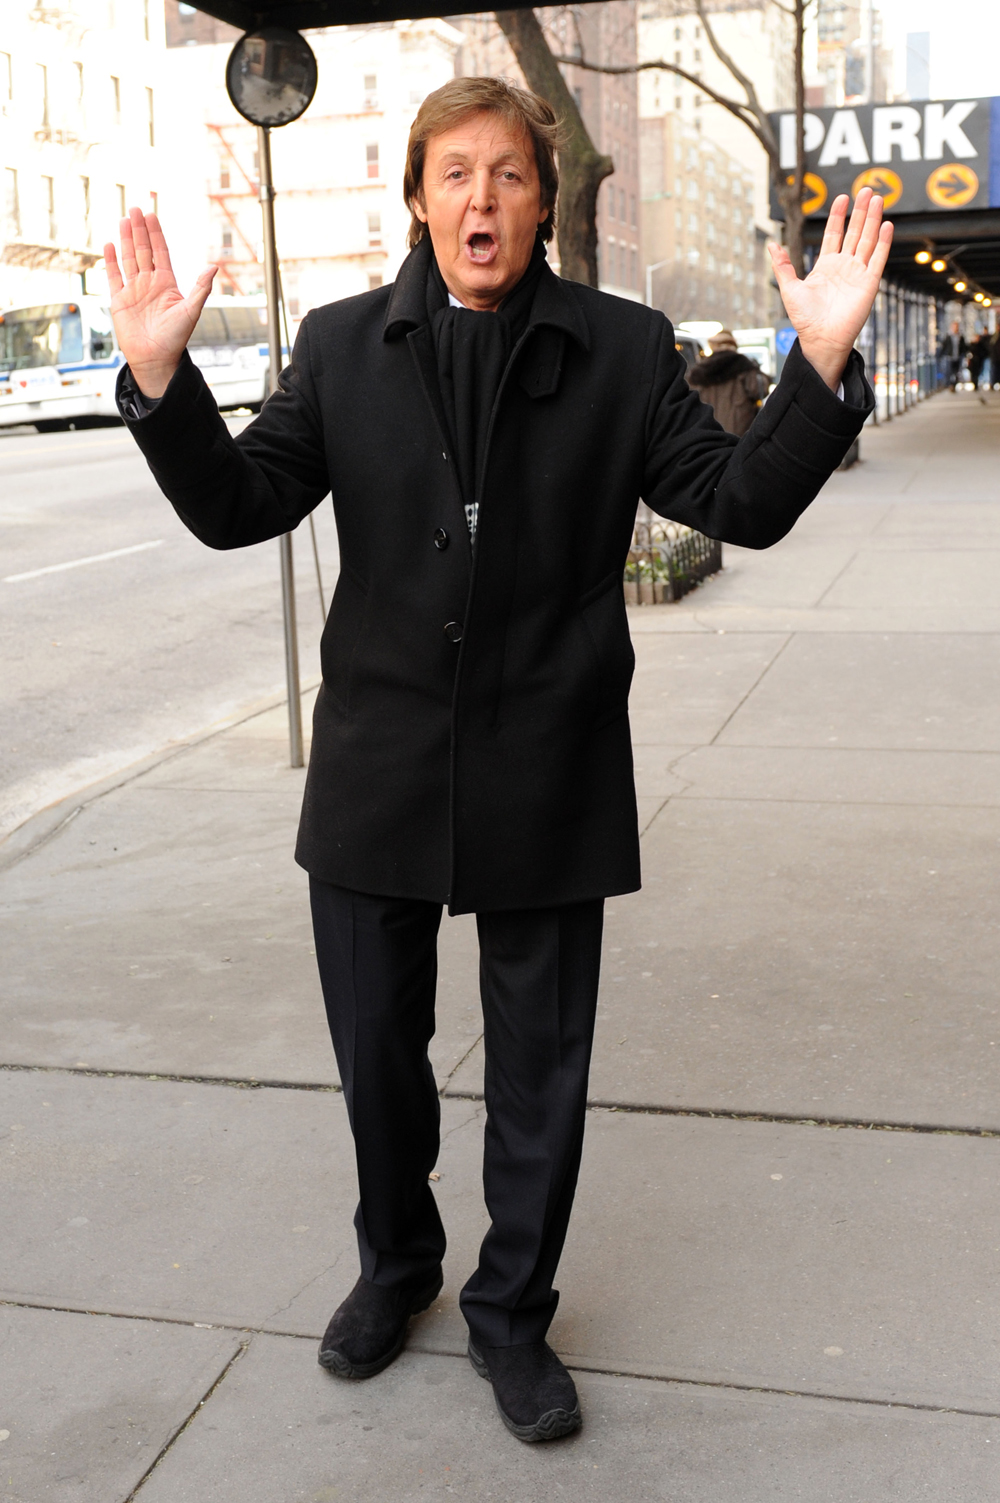 Paul McCartney posed for photographers on 57th Street in Manhatt